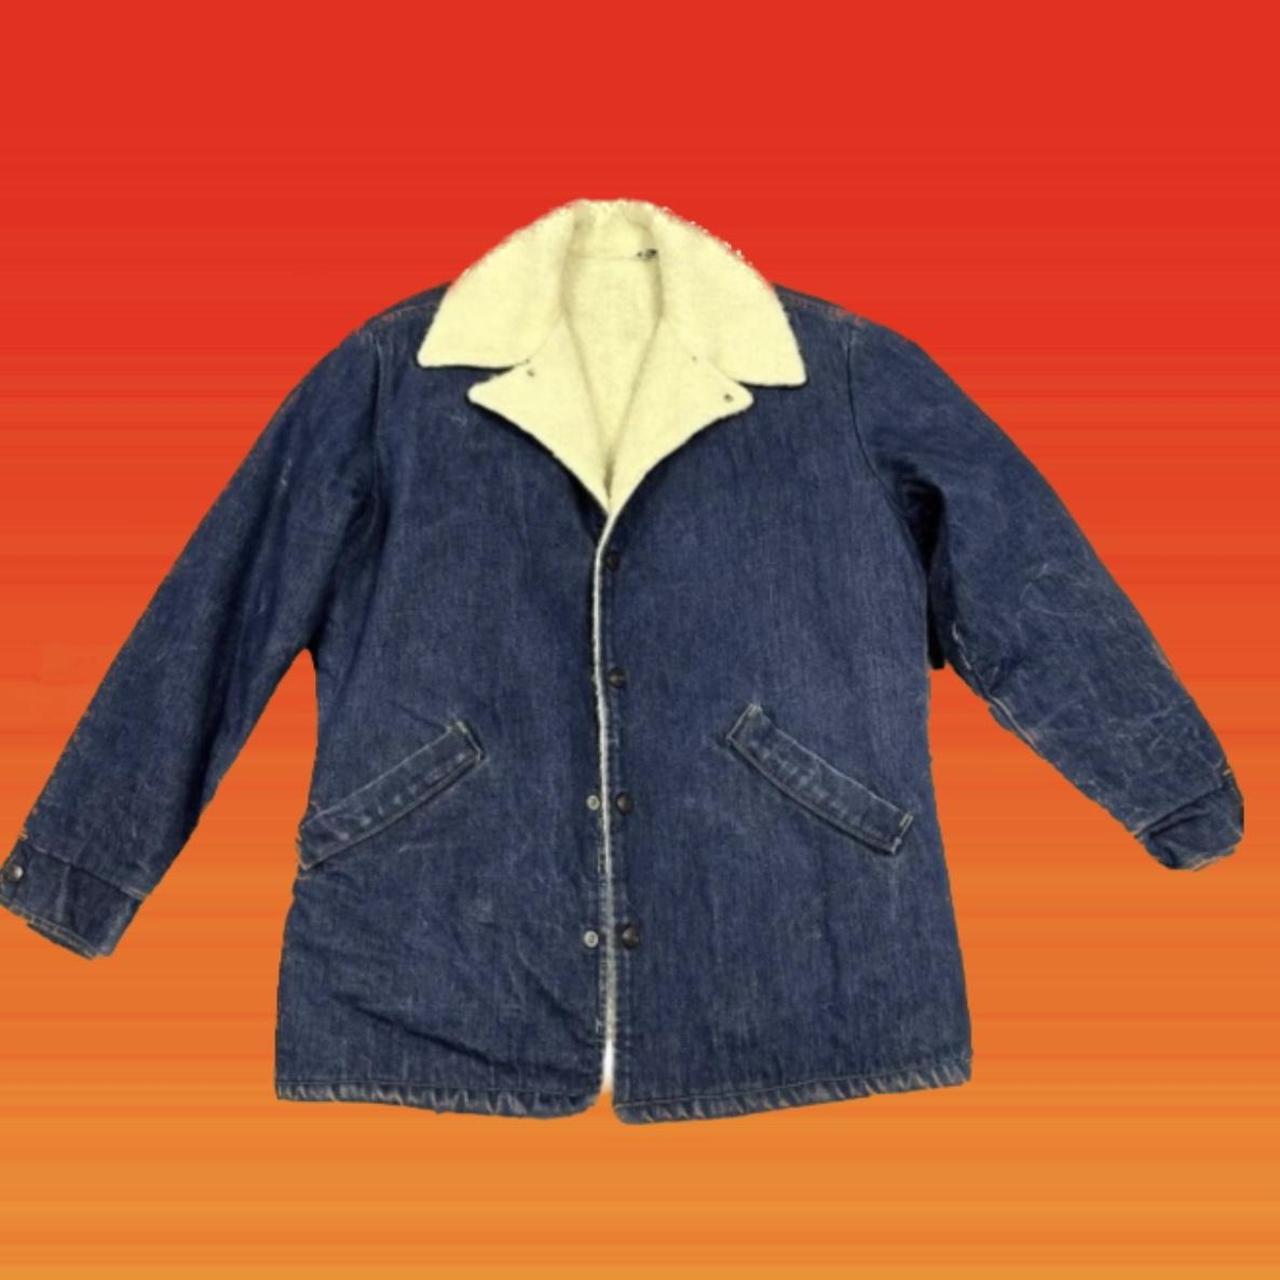 Buy Fuwenni Men's Sherpa Fleece Lined Denim Trucker Jacket Winter Jean  Jacket Cowboy Coat Dark Blue M at Amazon.in